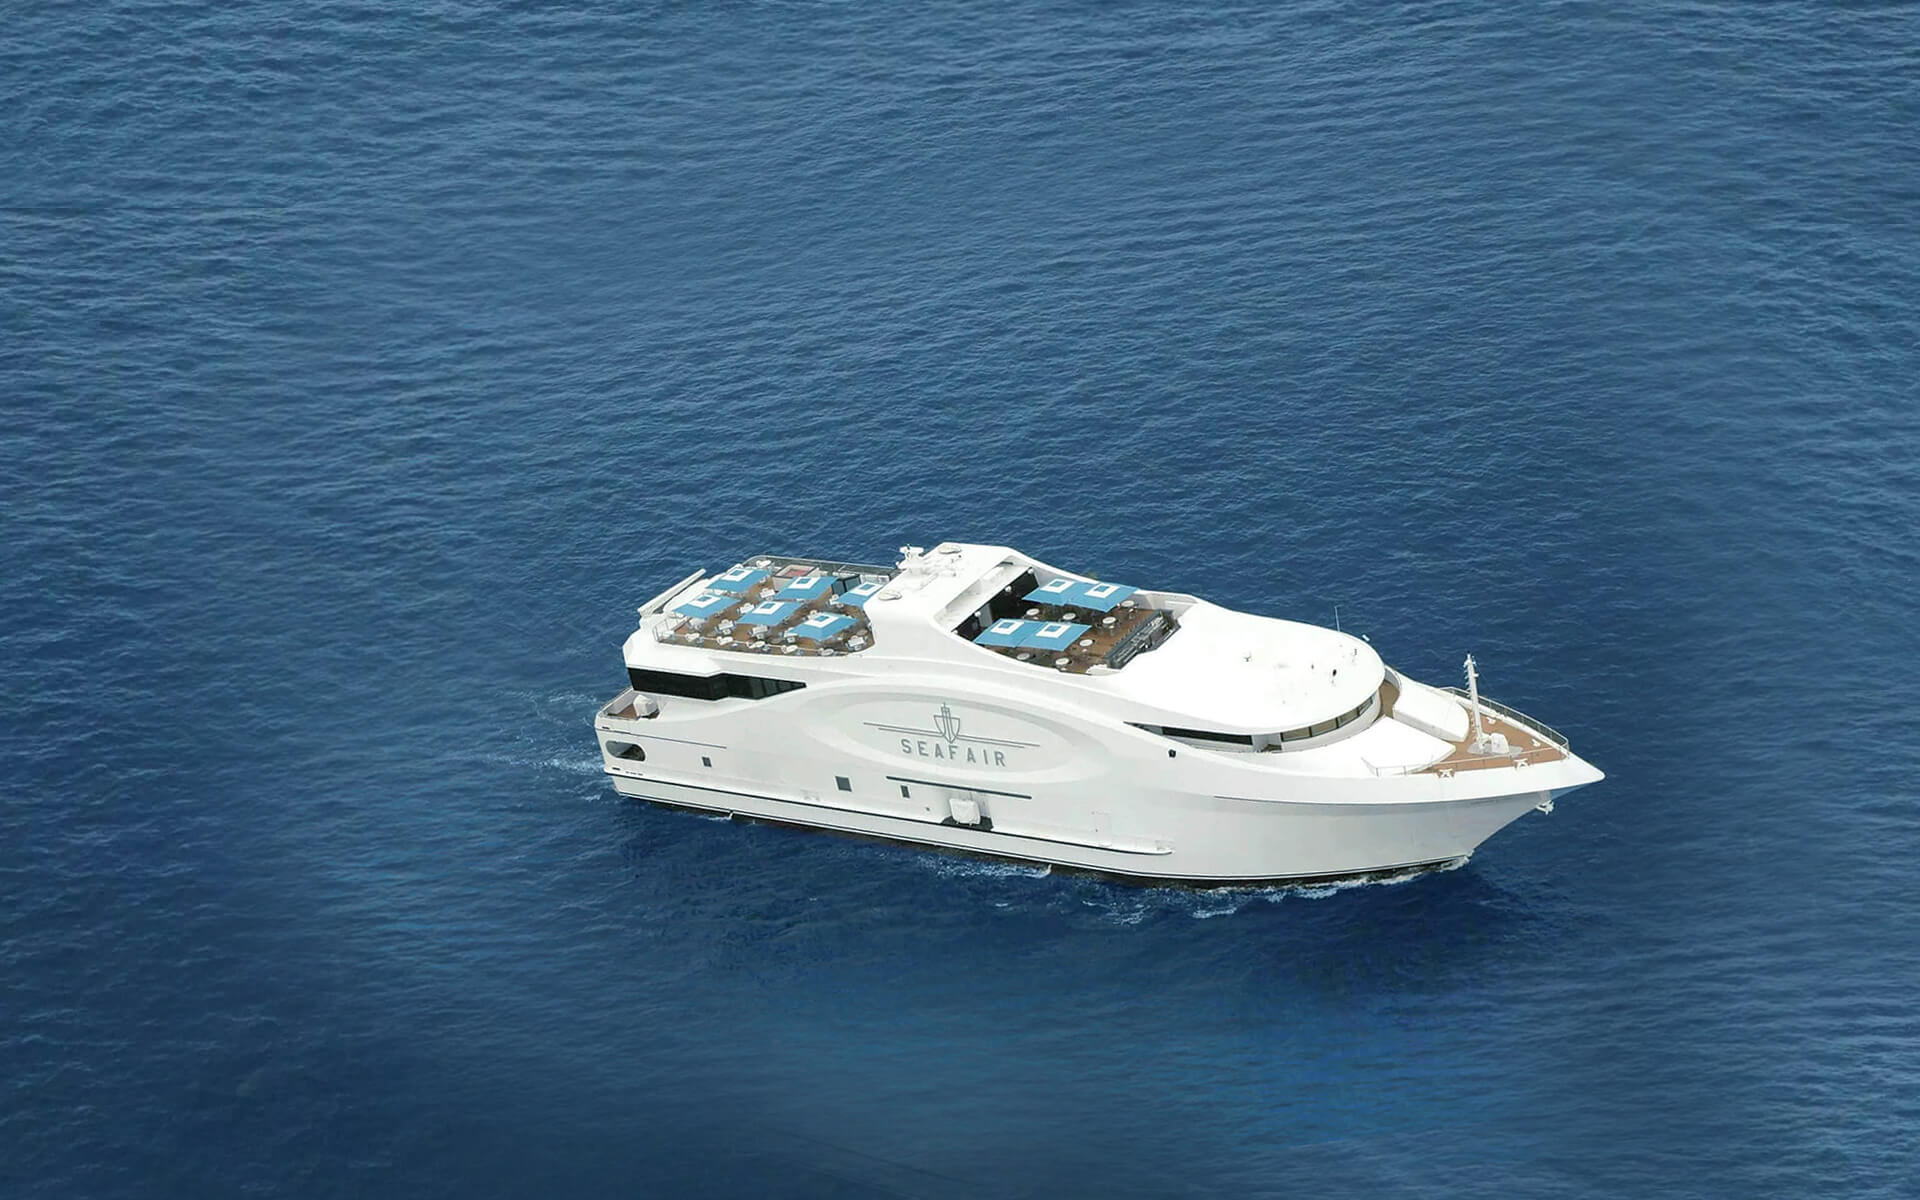 seafair mega yacht new years